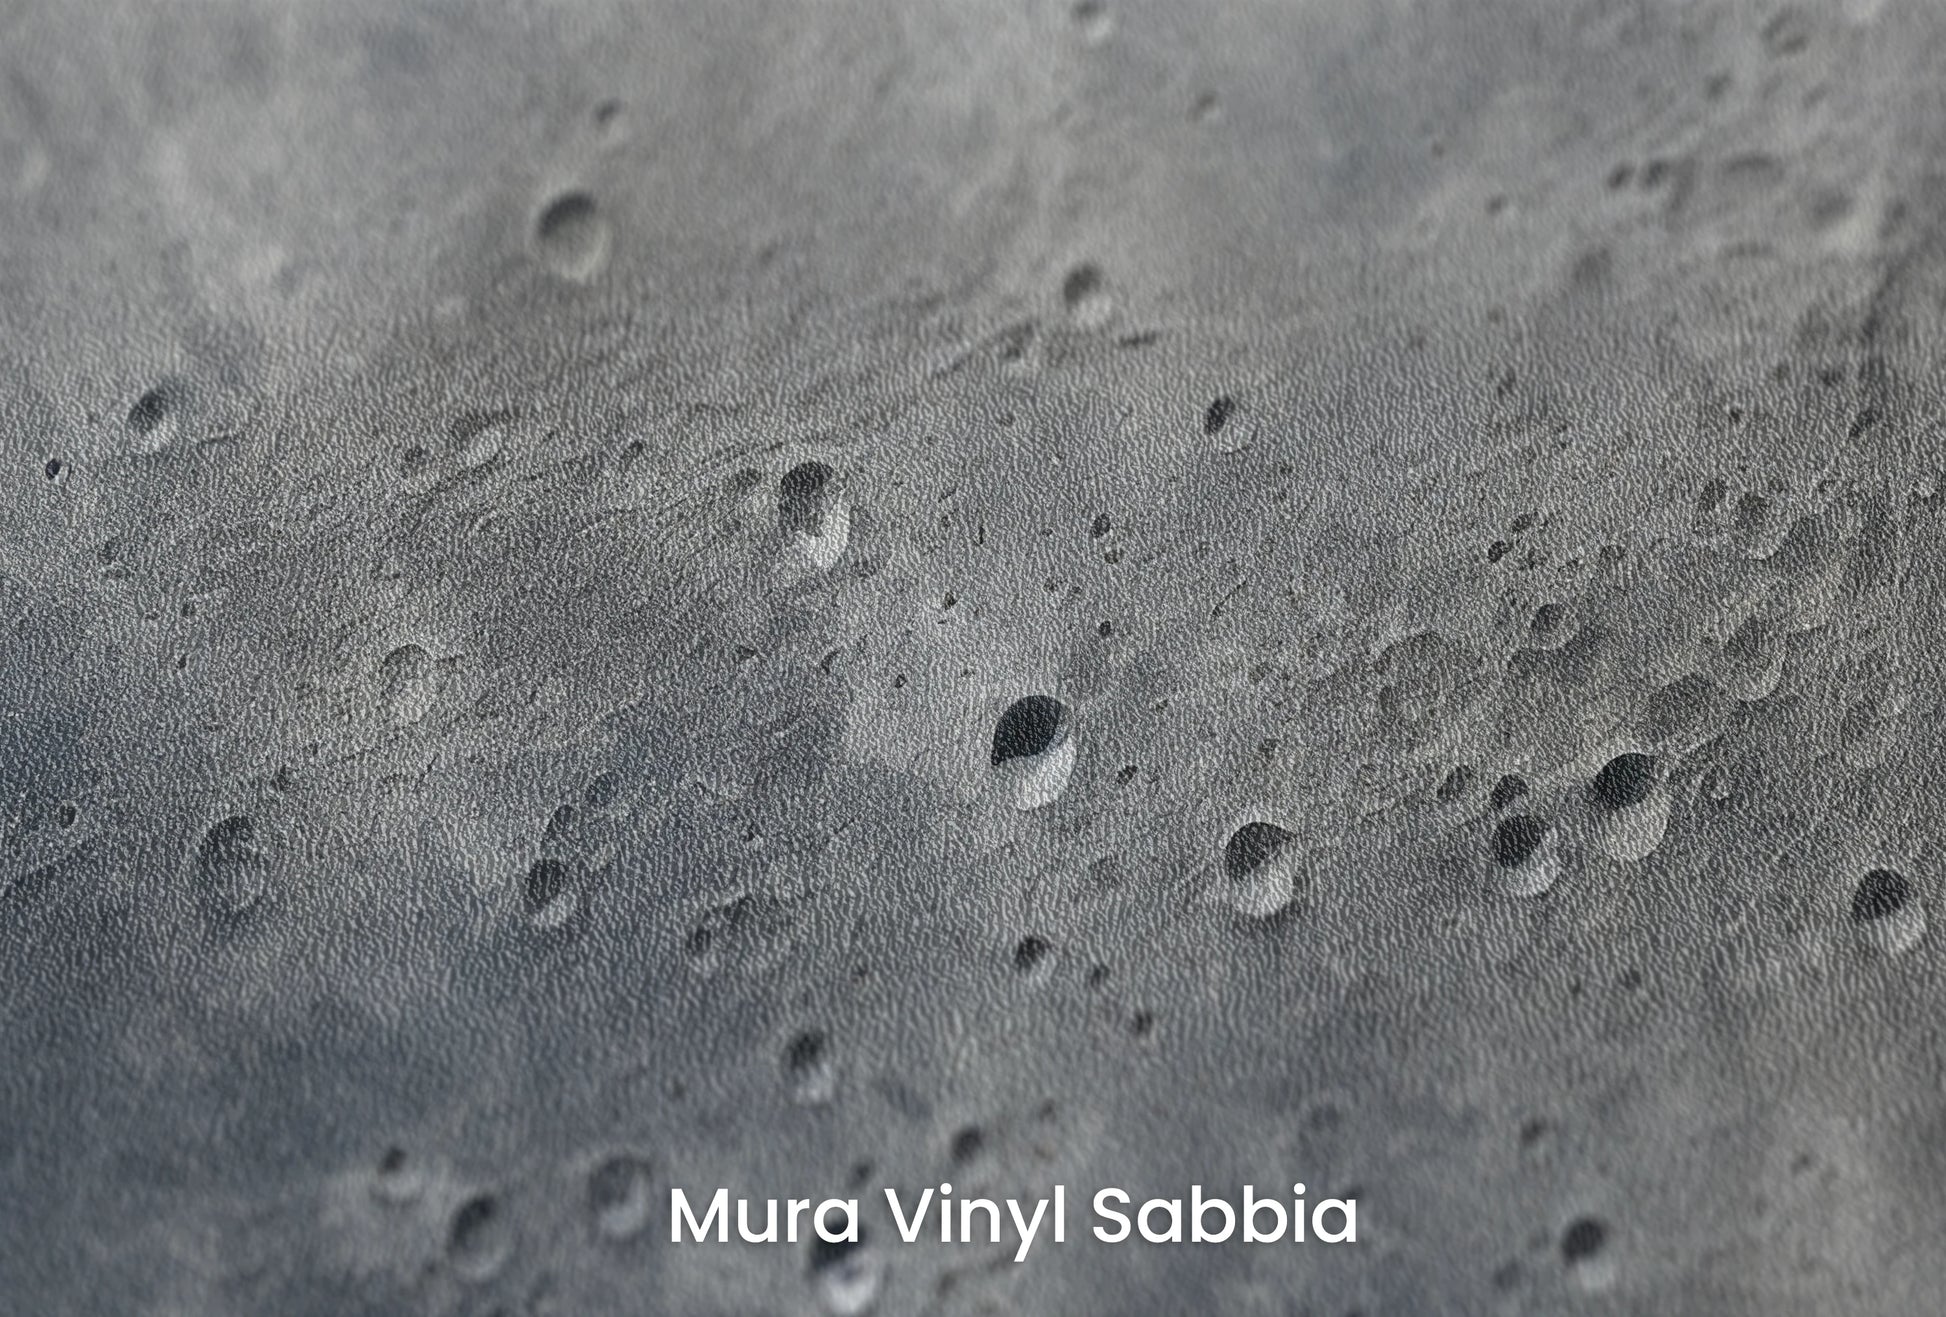 Zbliżenie na artystyczną fototapetę o nazwie Moon's Mystery na podłożu Mura Vinyl Sabbia struktura grubego ziarna piasku.